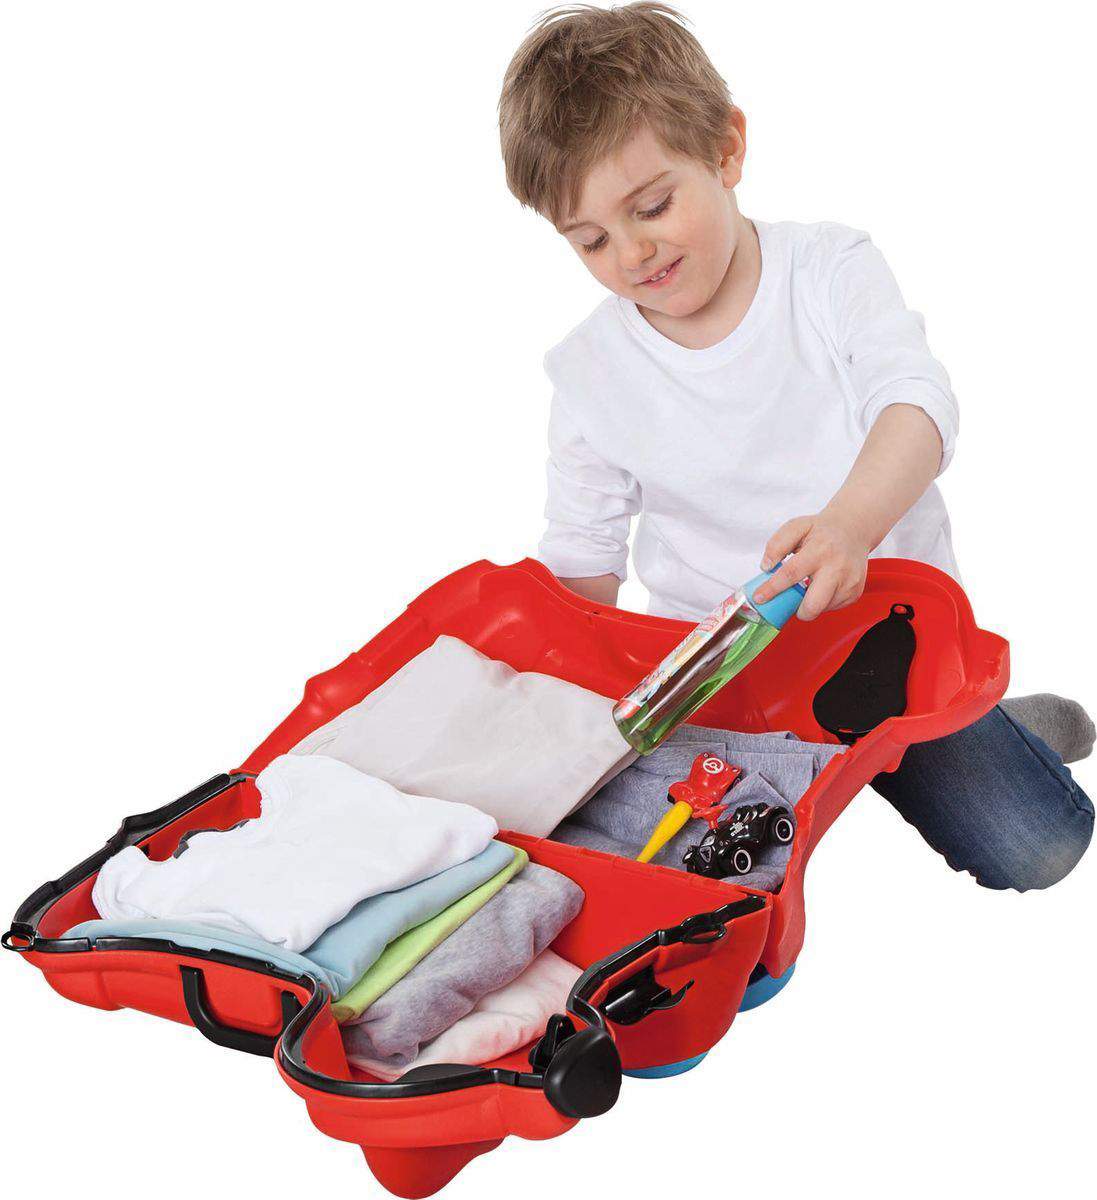 Детский чемодан на колесиках BIG 55350